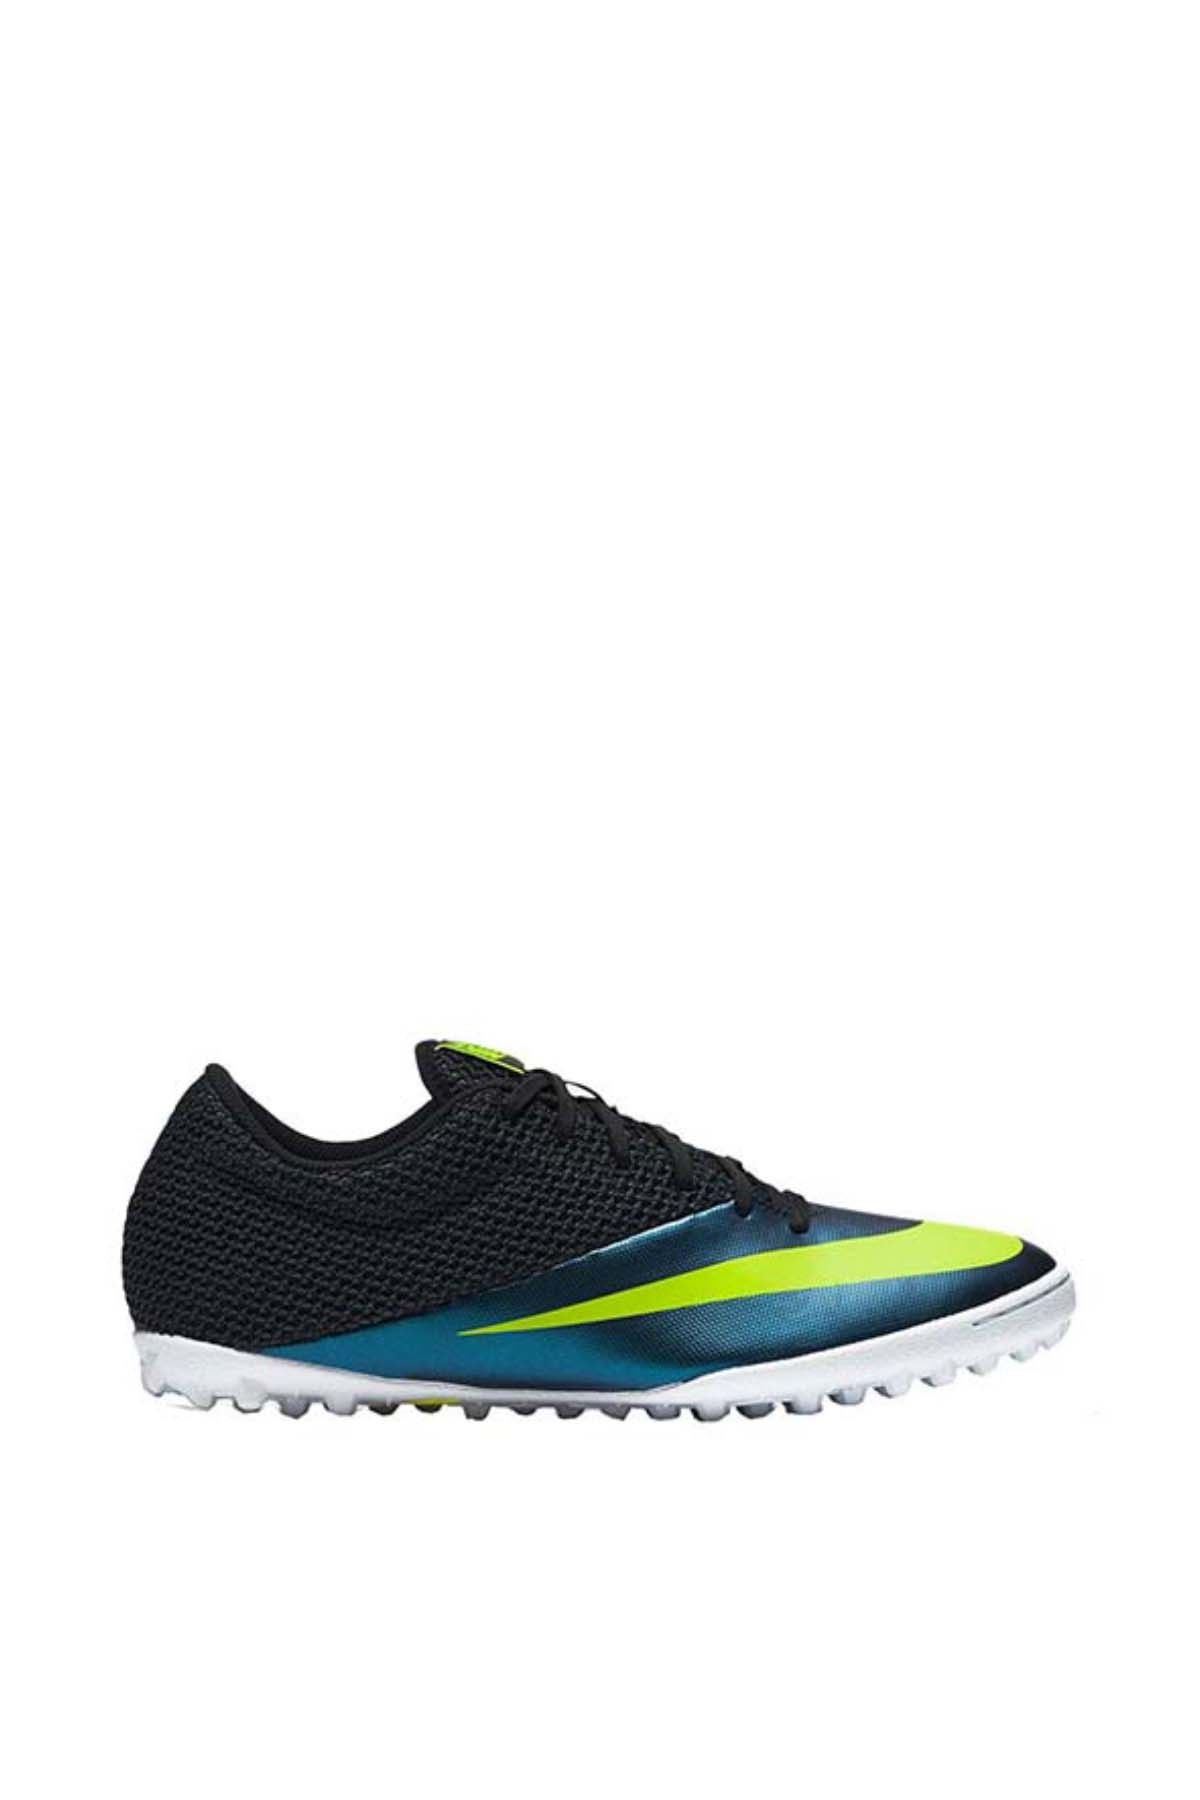 Nike Erkek Halı Saha Ayakkabısı - Mercurial X Pro TF - 725245-401